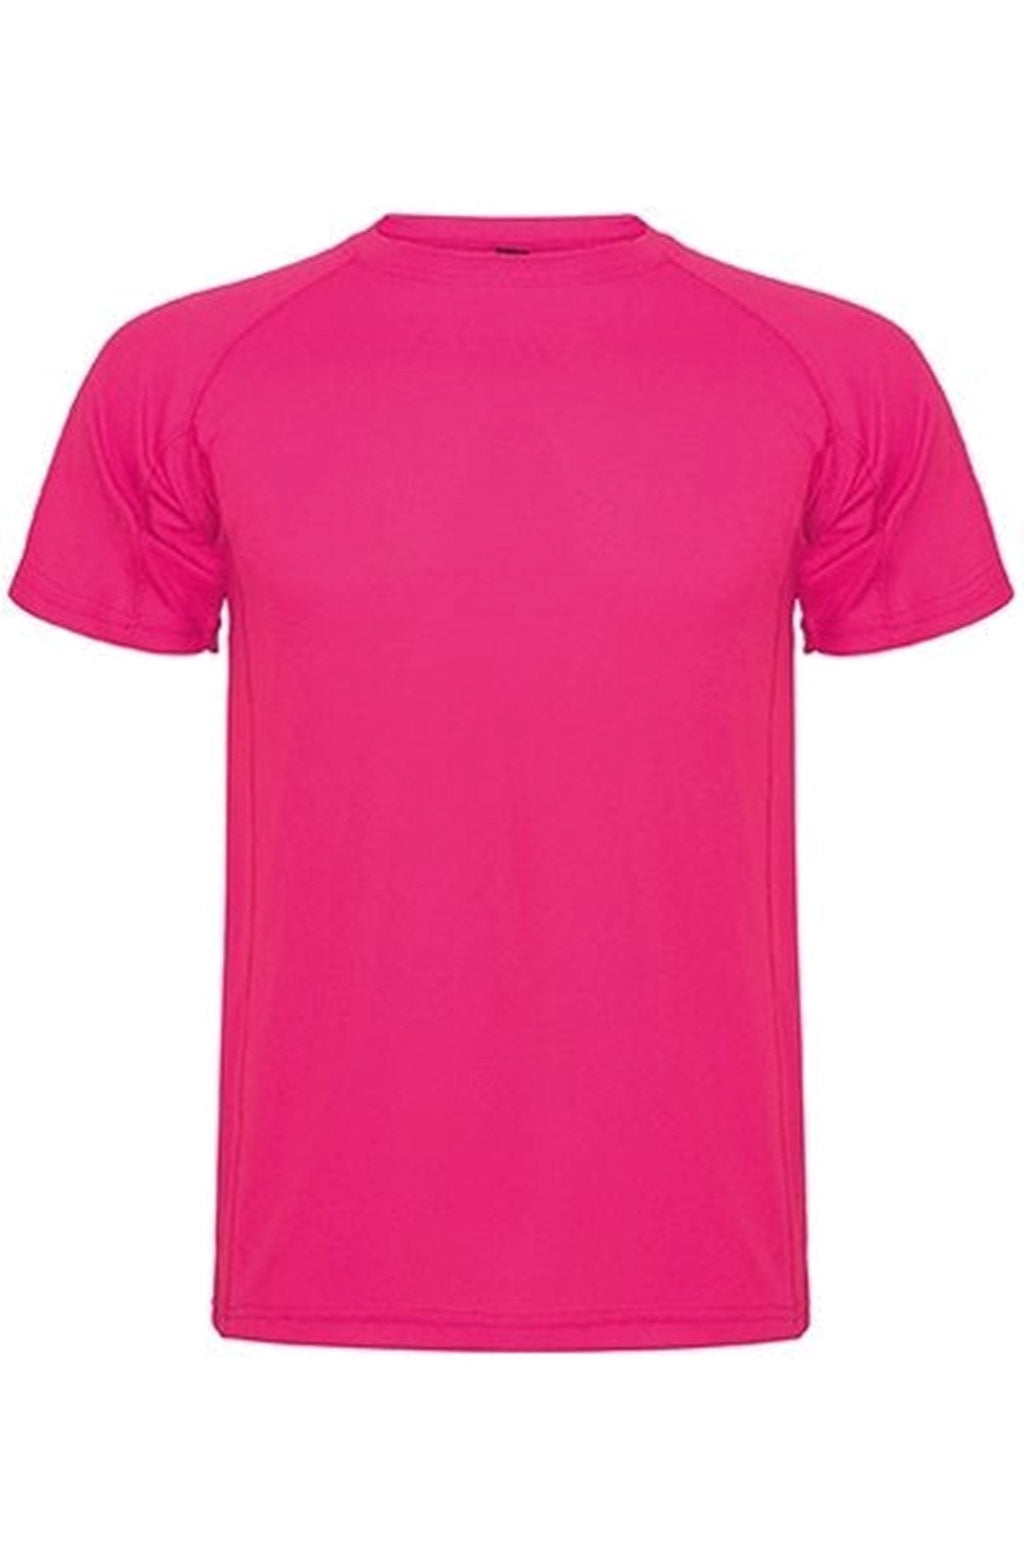 Treniruotės marškinėliai - rožiniai